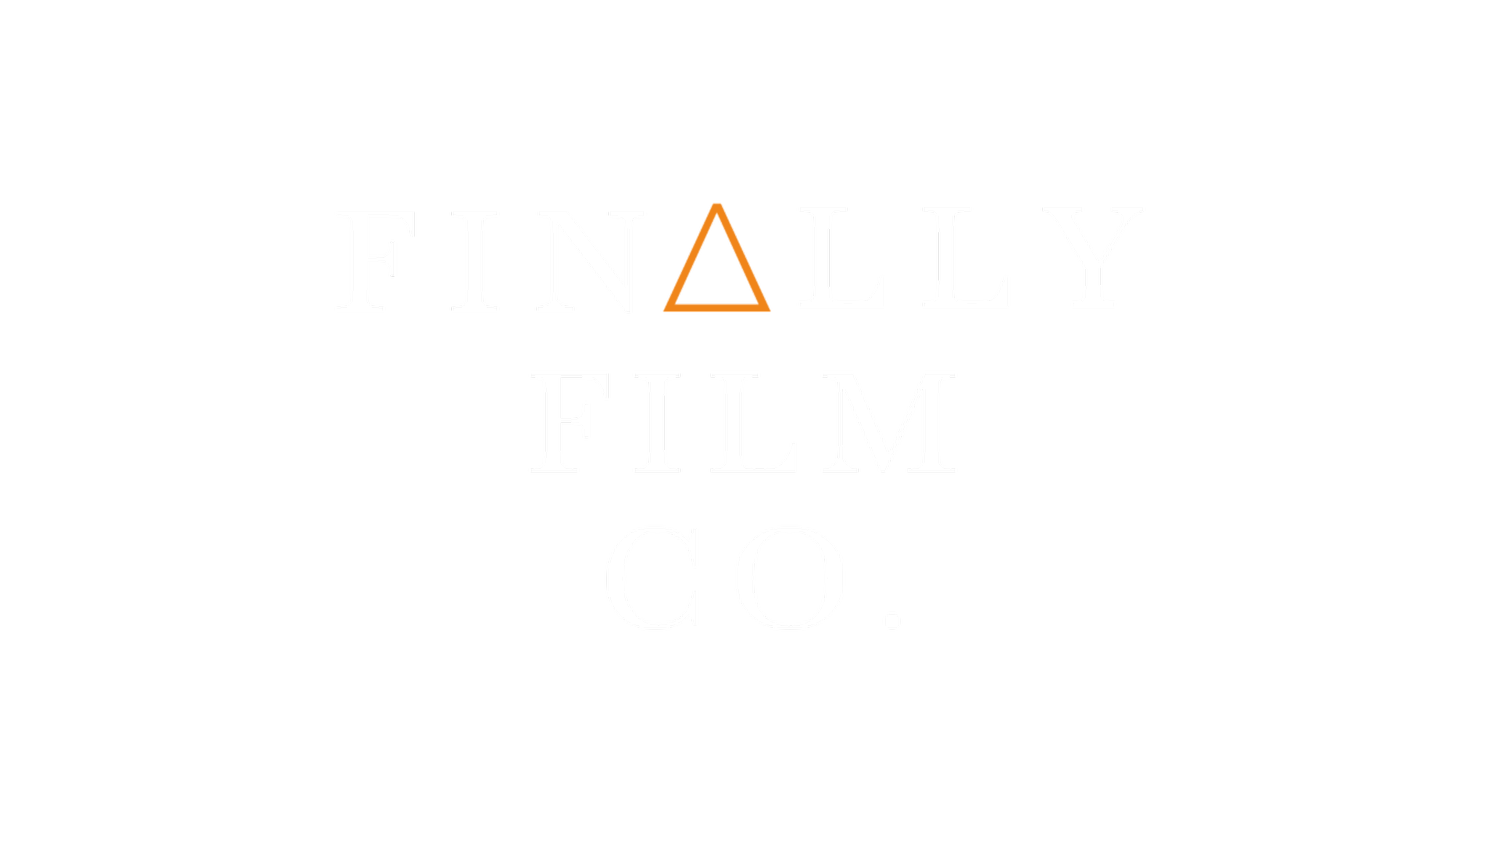 FINALLY FILM COMPANY